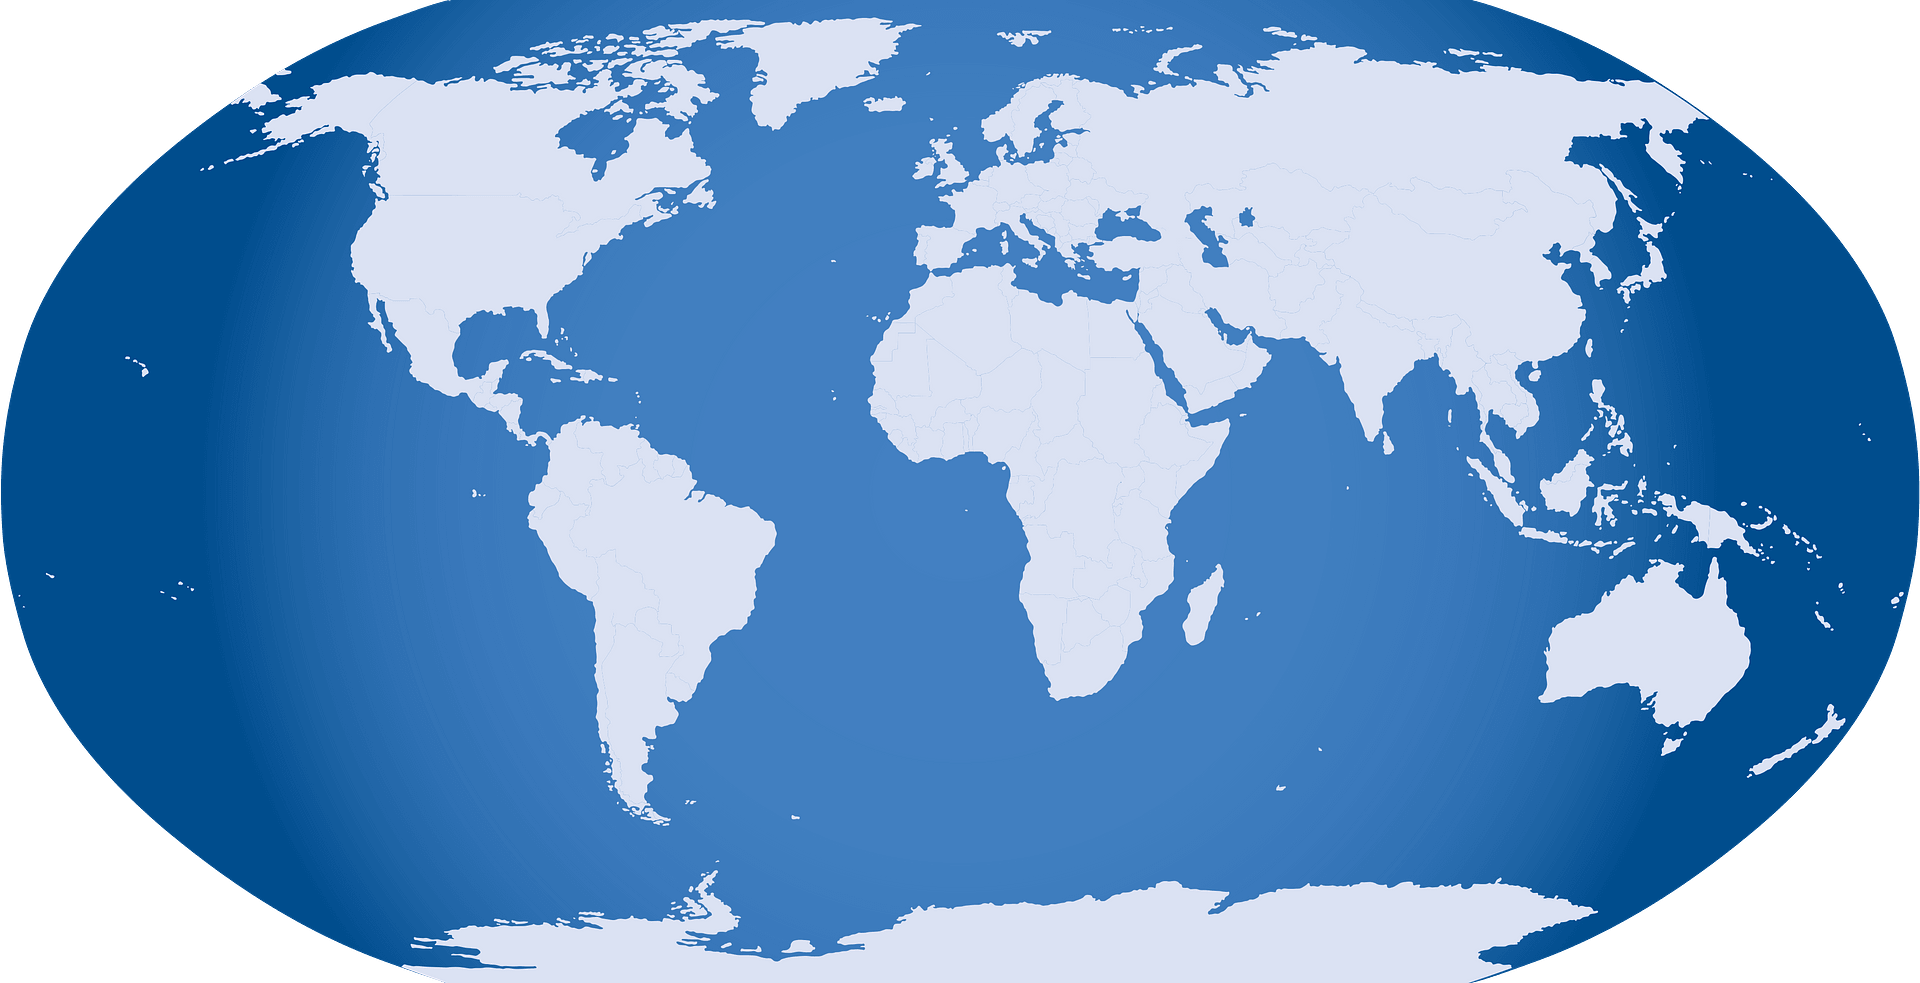 Карта материков на глобусе